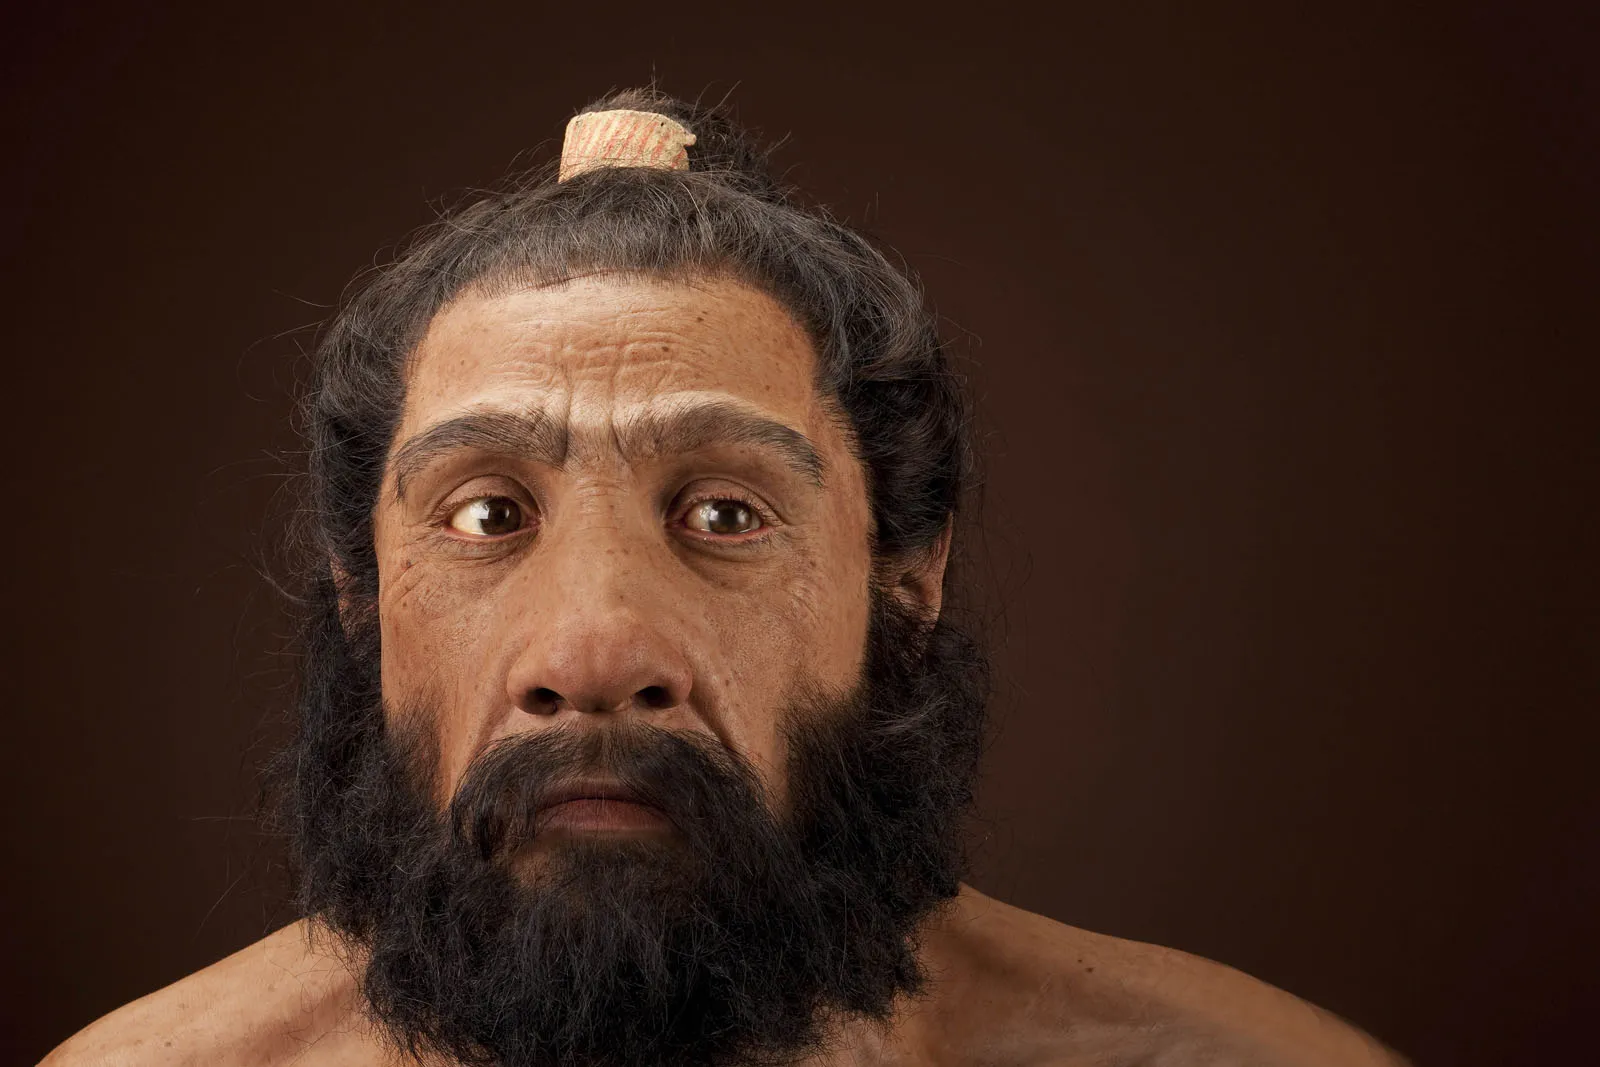 Неандертальцы, наши ближайшие предки человека, вымерли 35–40 000 лет назад. Джон Гурач/Чип Кларк через Wikicommons под общественным достоянием